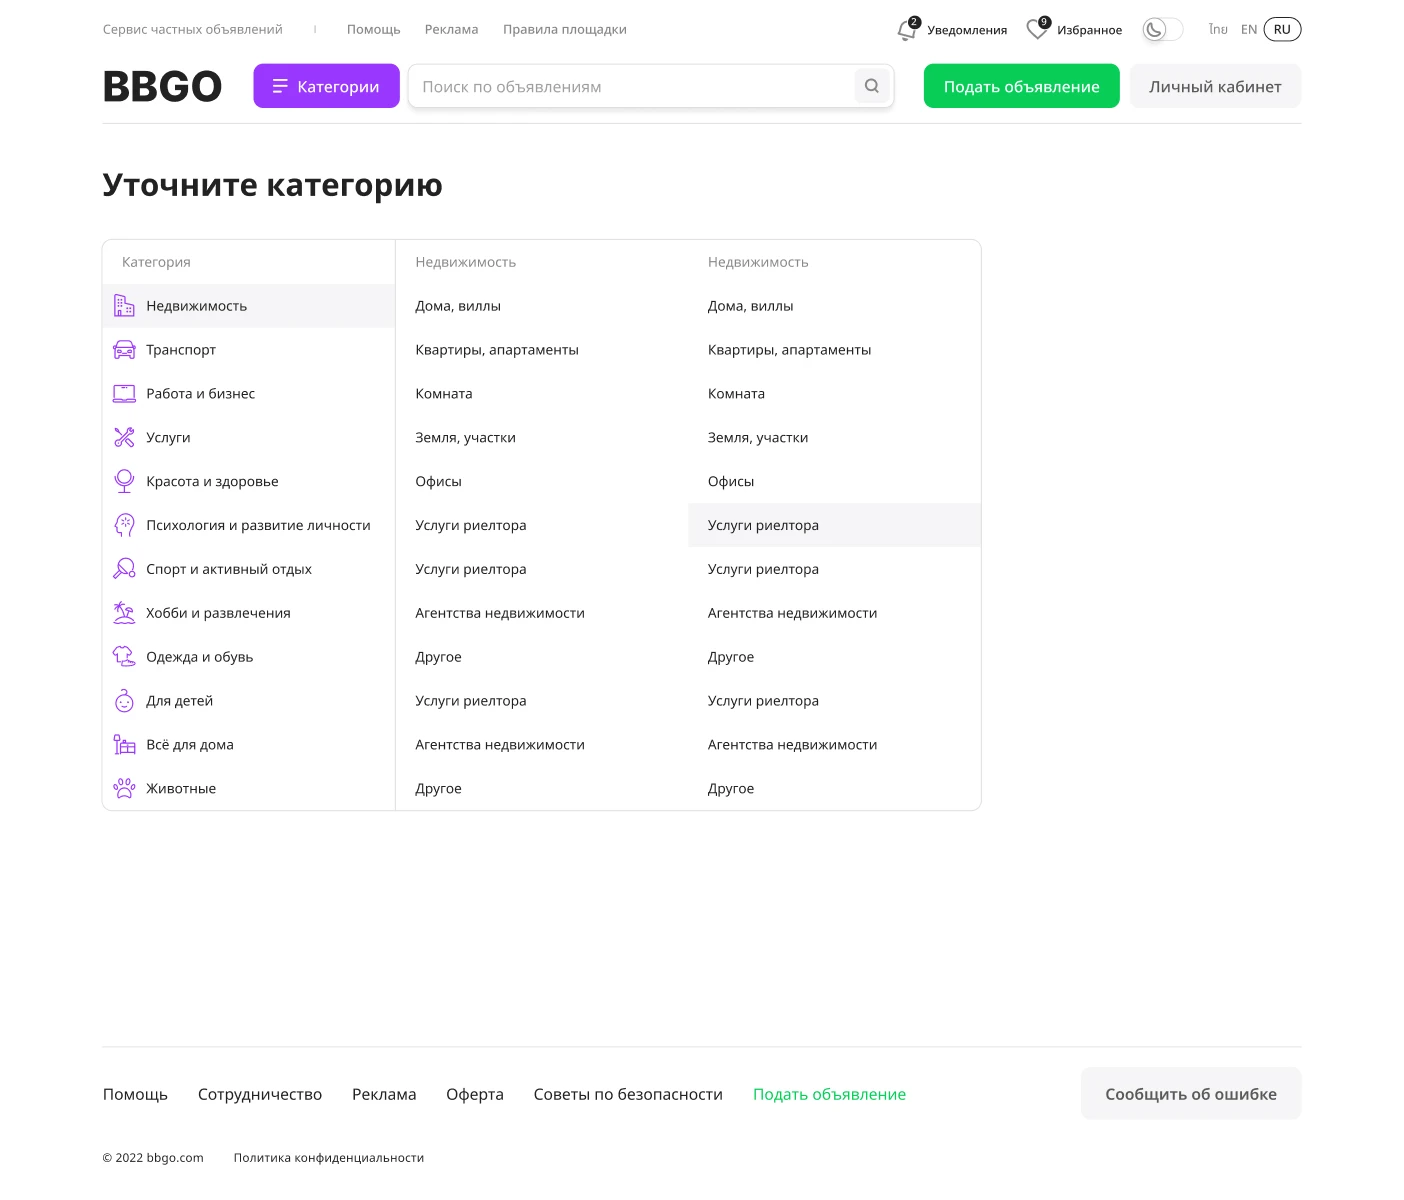 BBGO — Разделы нового сайта